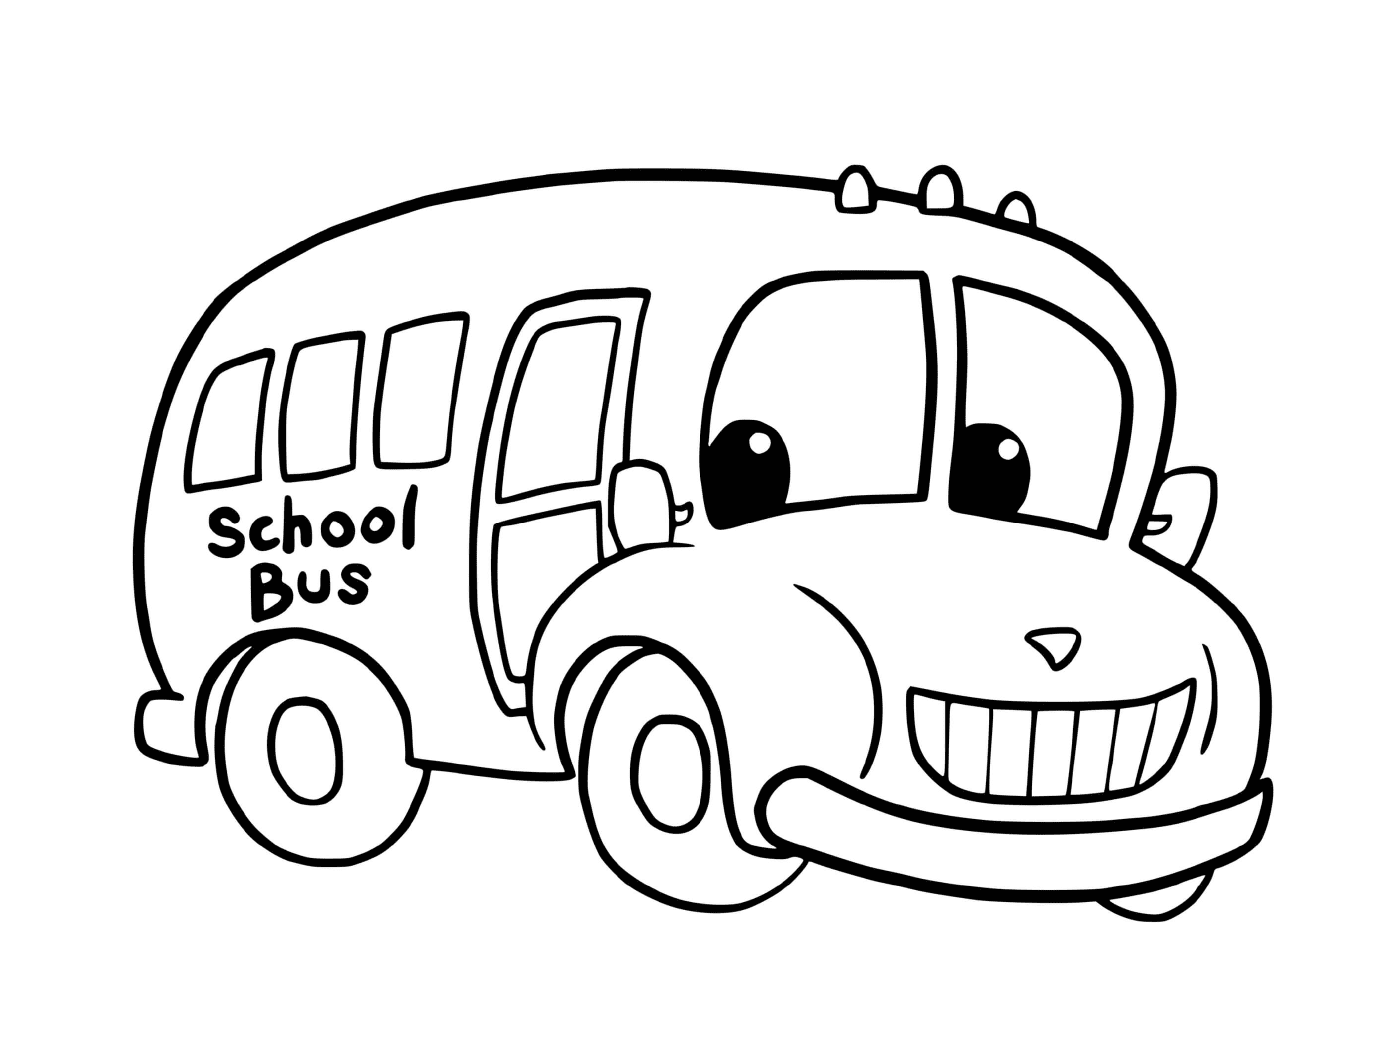  Autobuses escolares 